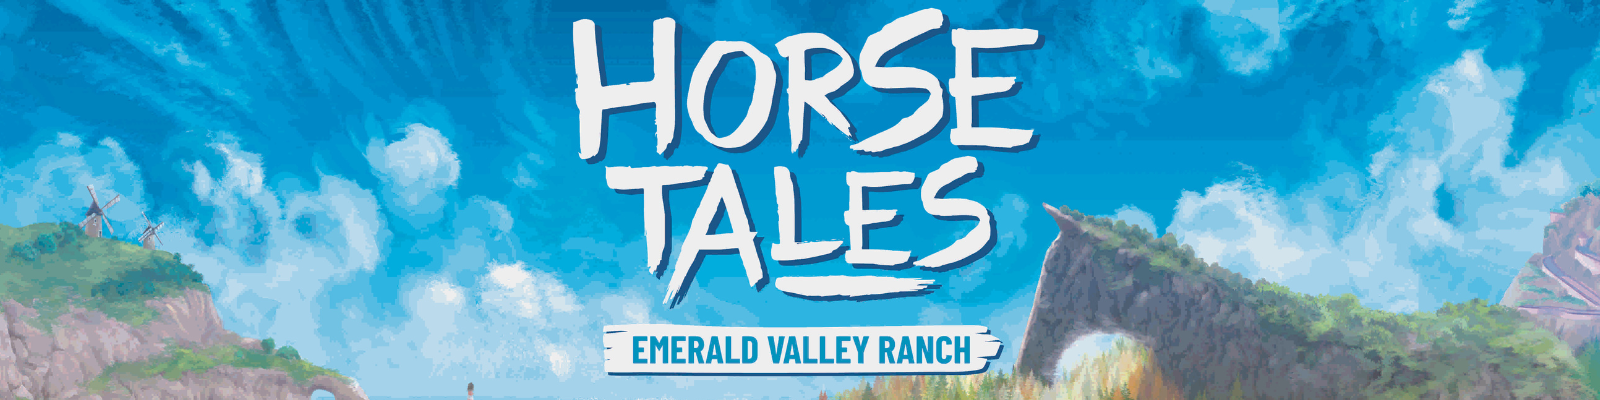 Horse Tales Preview Gamescom